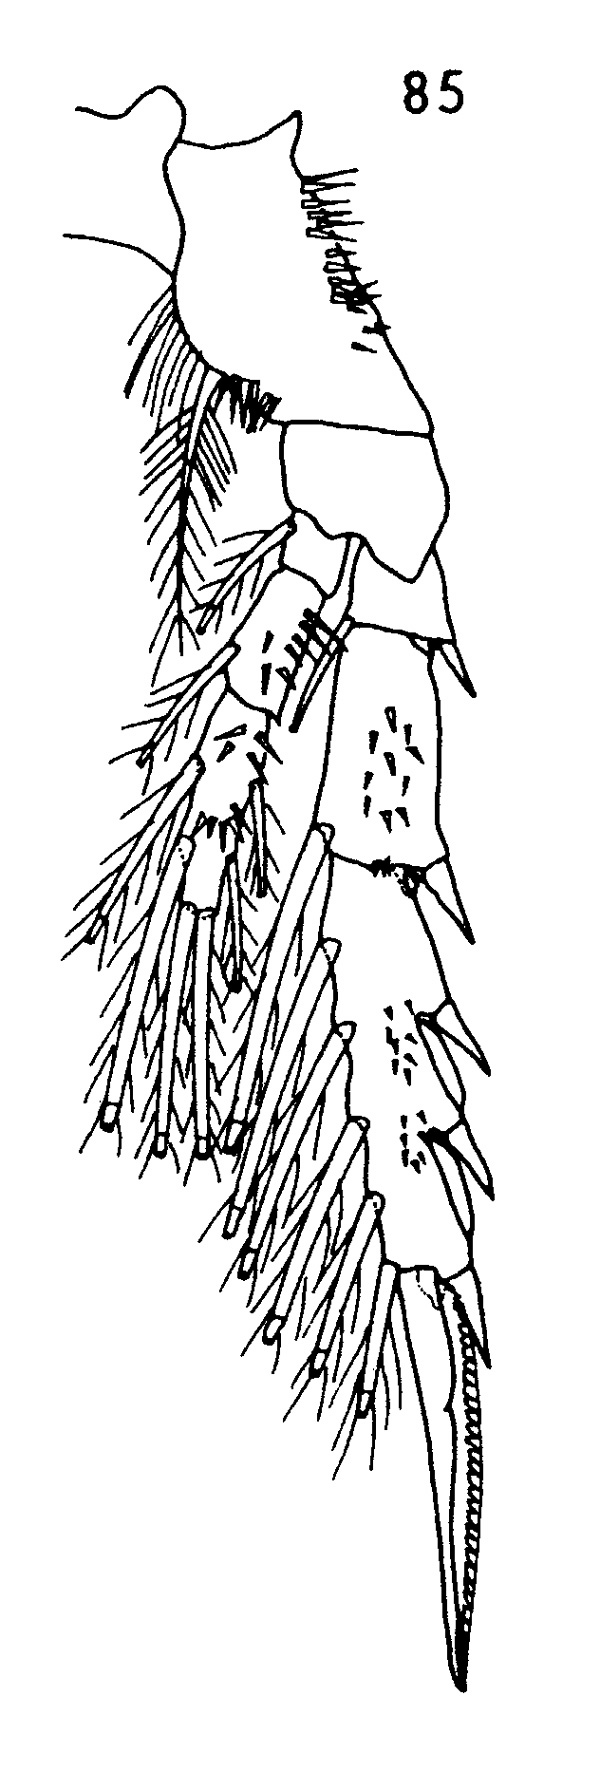 Espce Spinocalanus angusticeps - Planche 4 de figures morphologiques